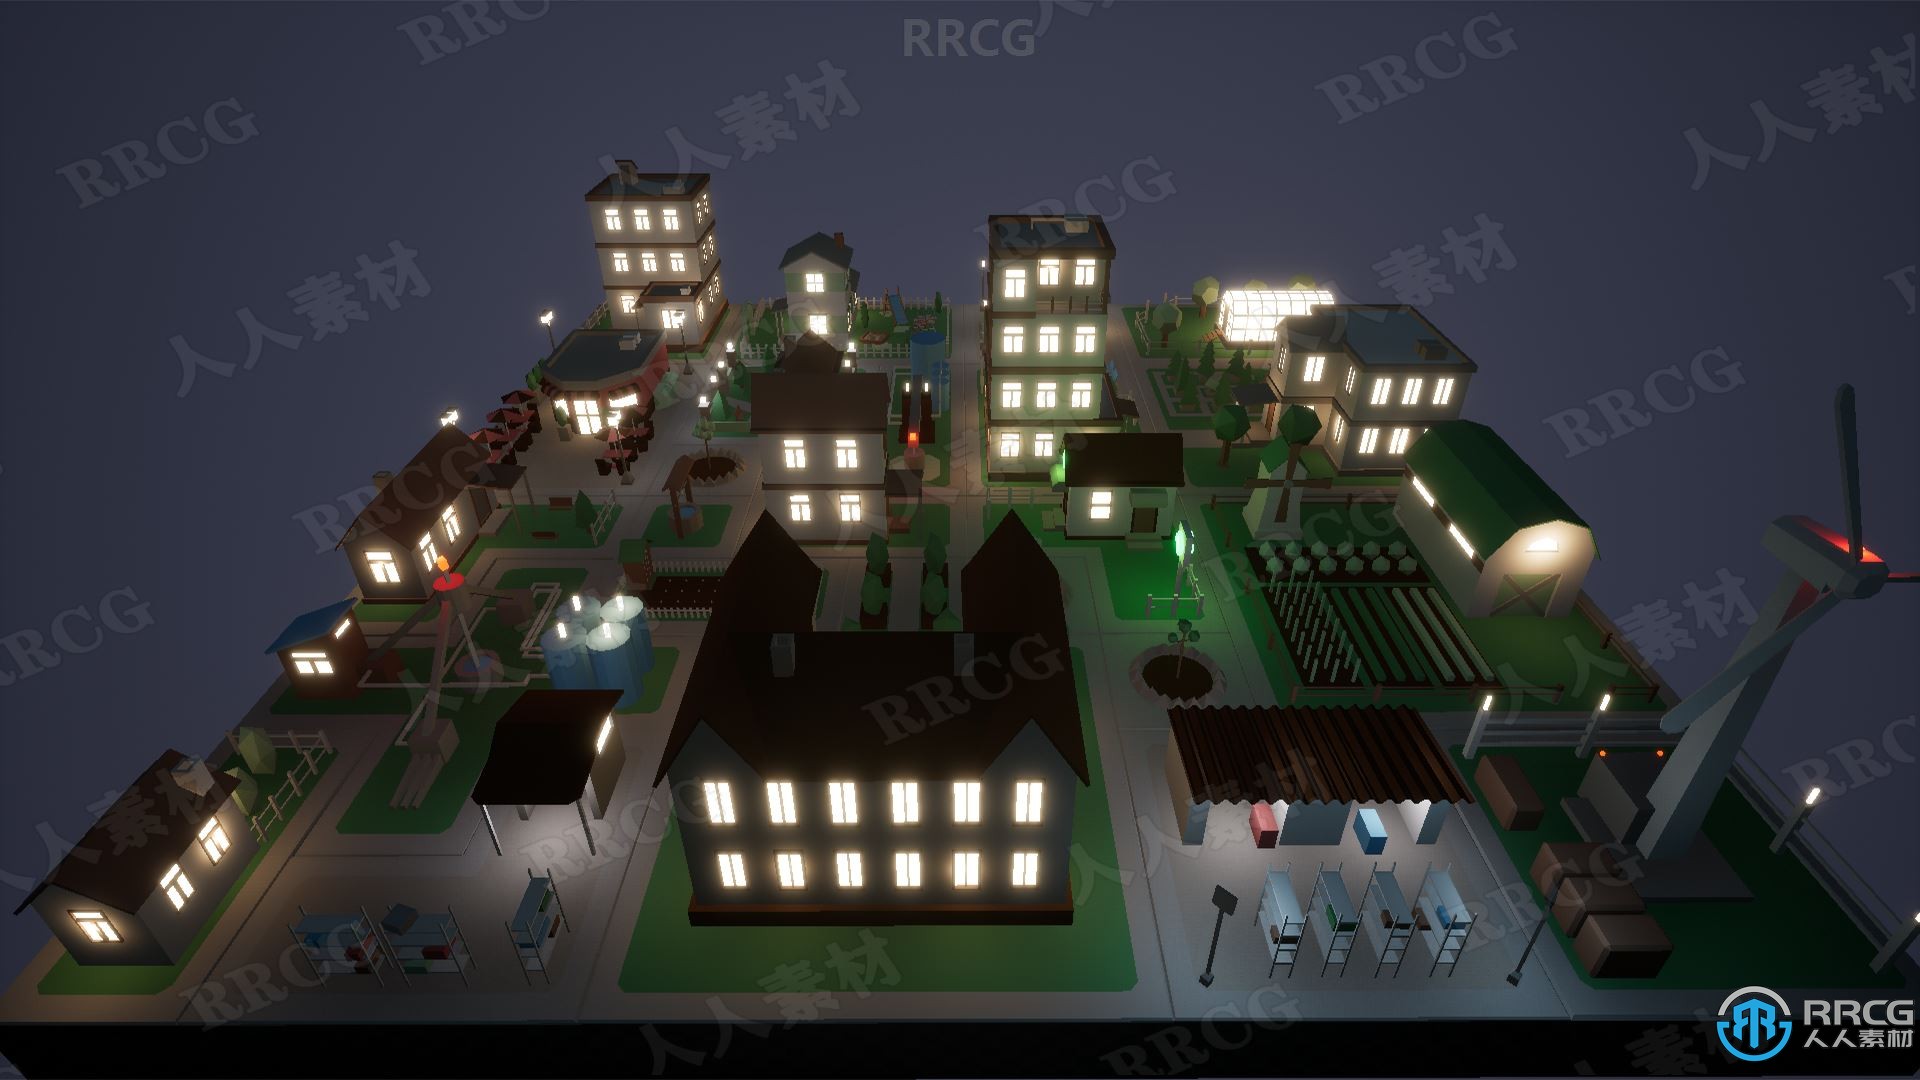 低聚现代都市城市建模Unreal Engine游戏素材资源